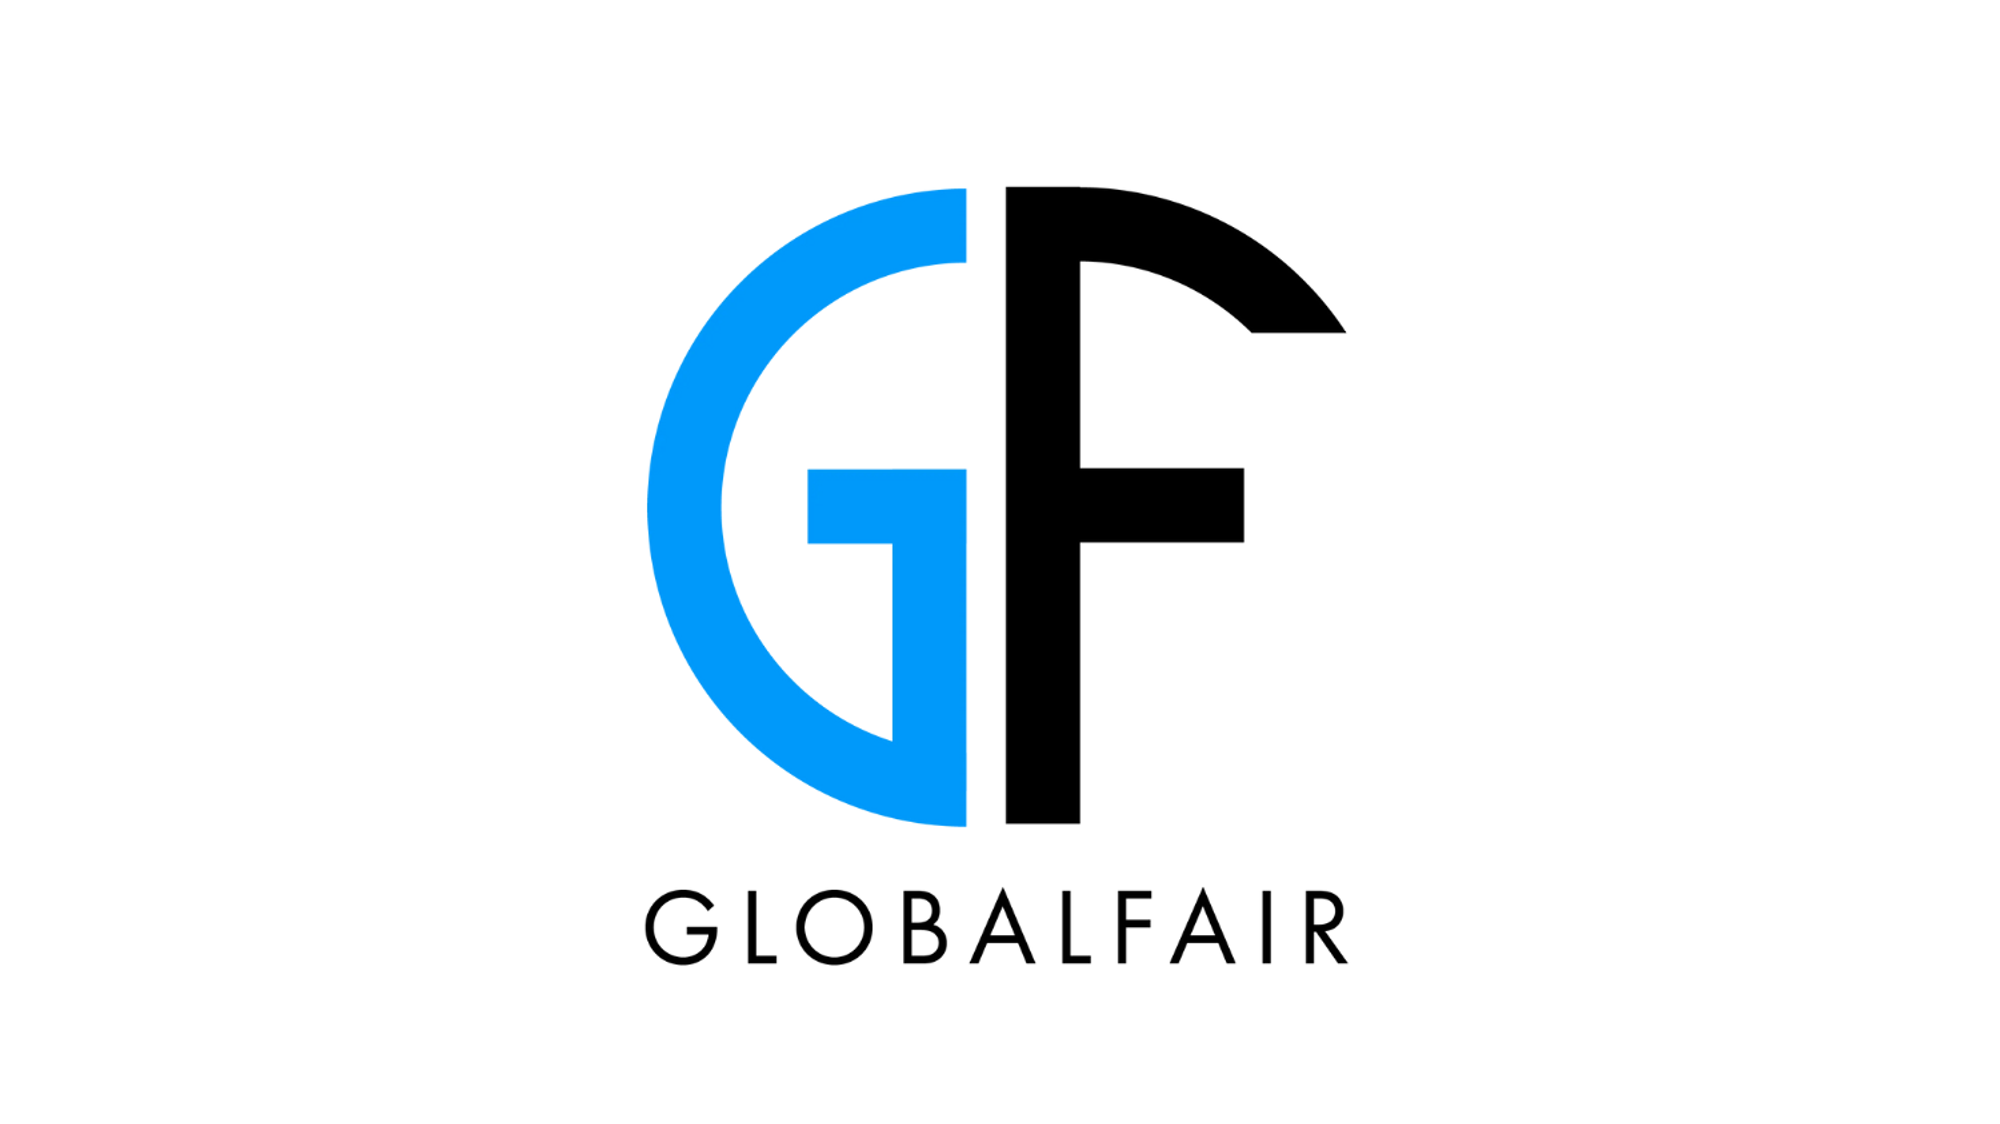 Globalfair